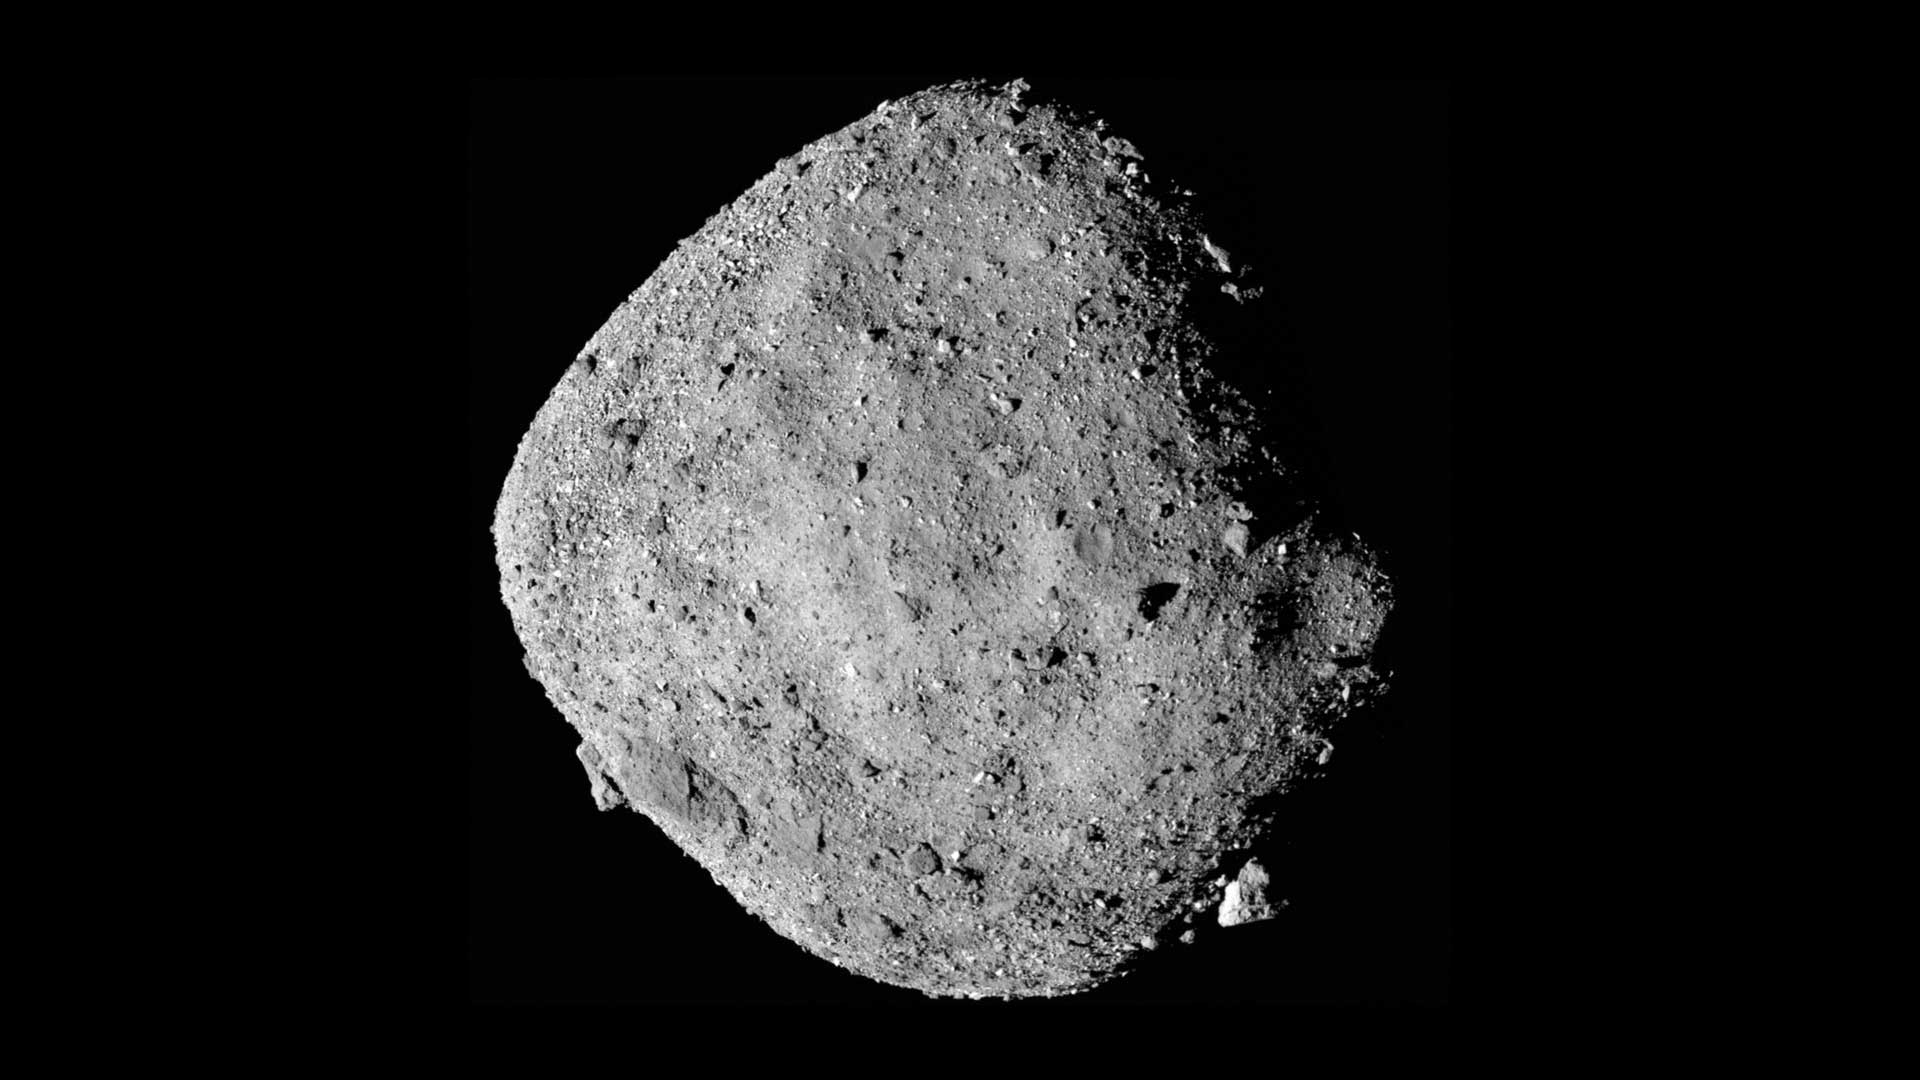 asteroid Bennu